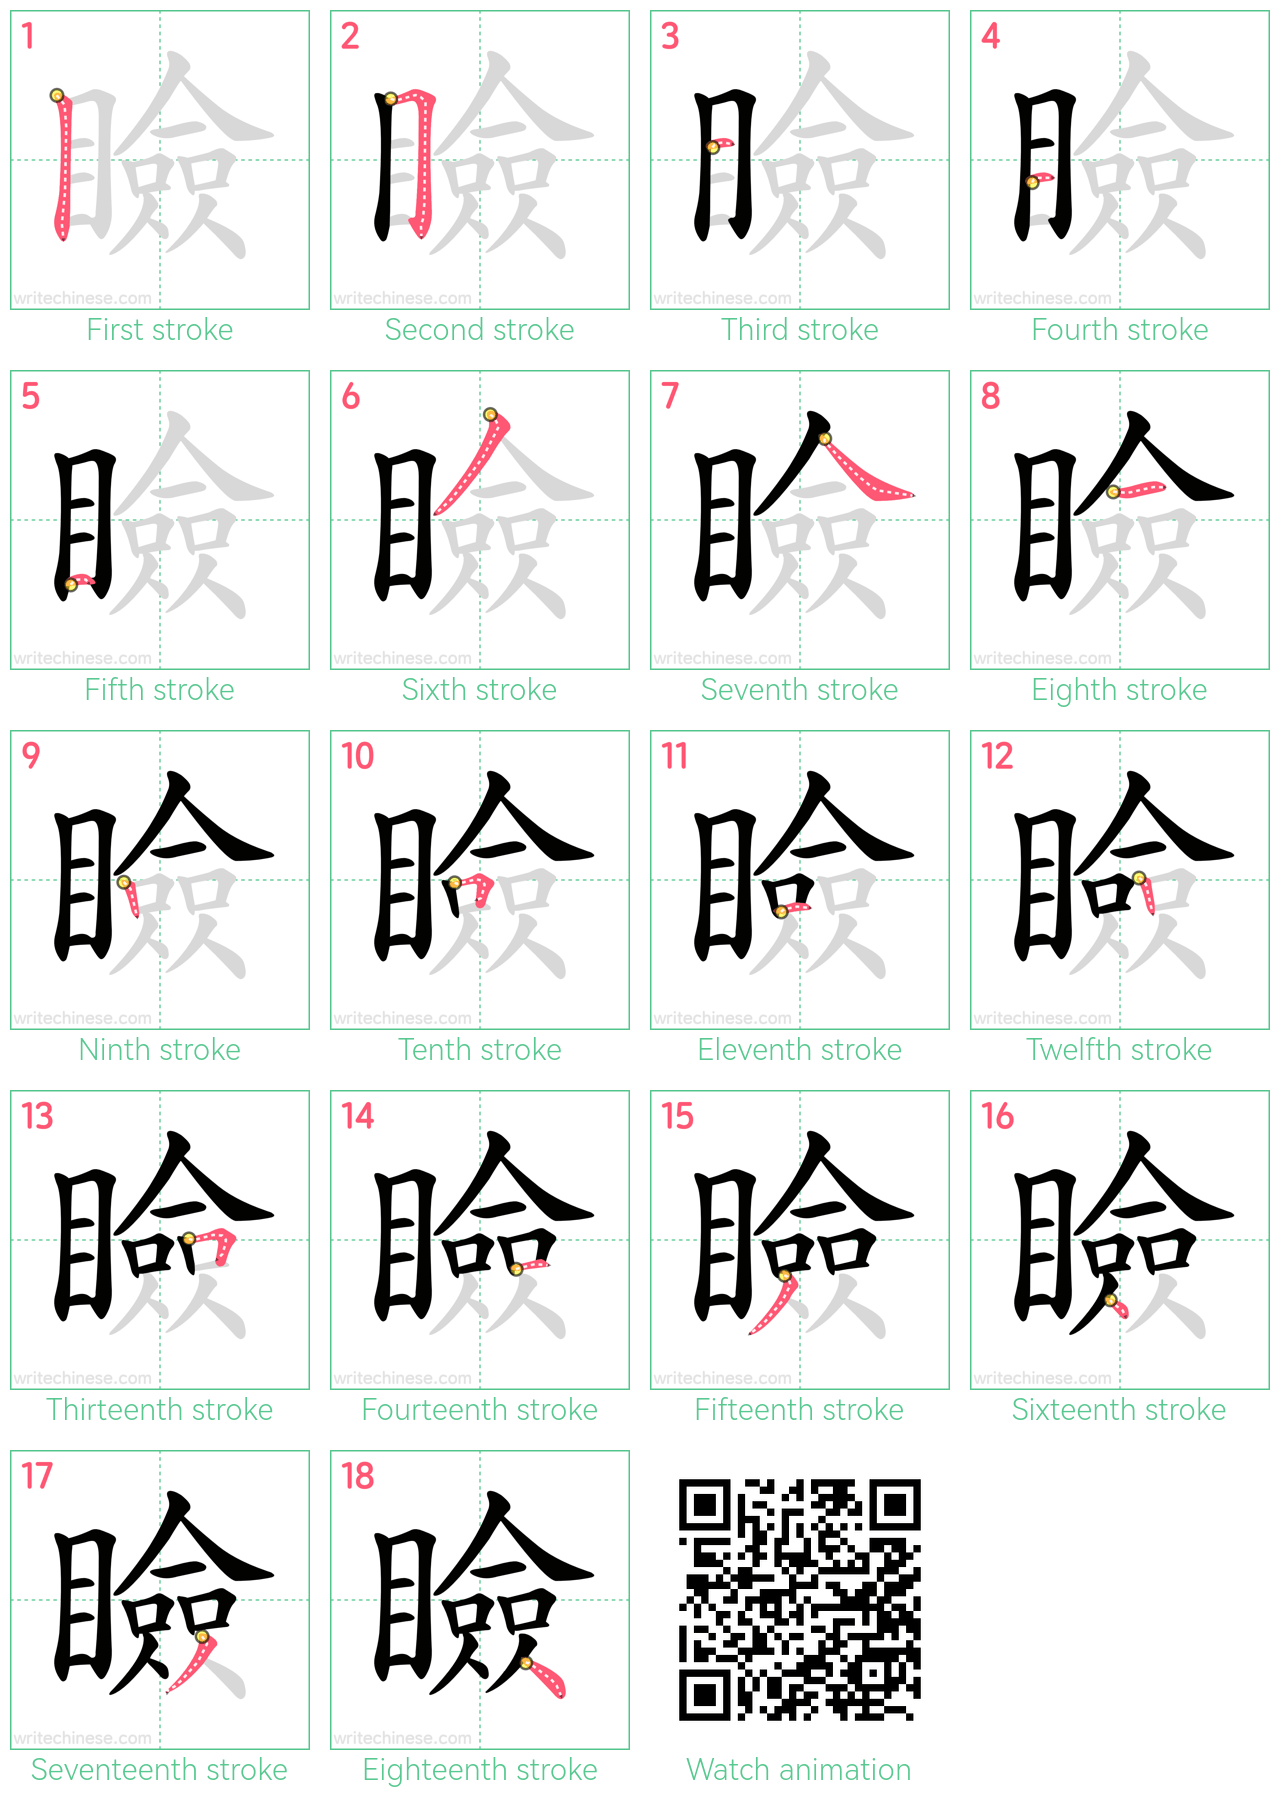 瞼 step-by-step stroke order diagrams